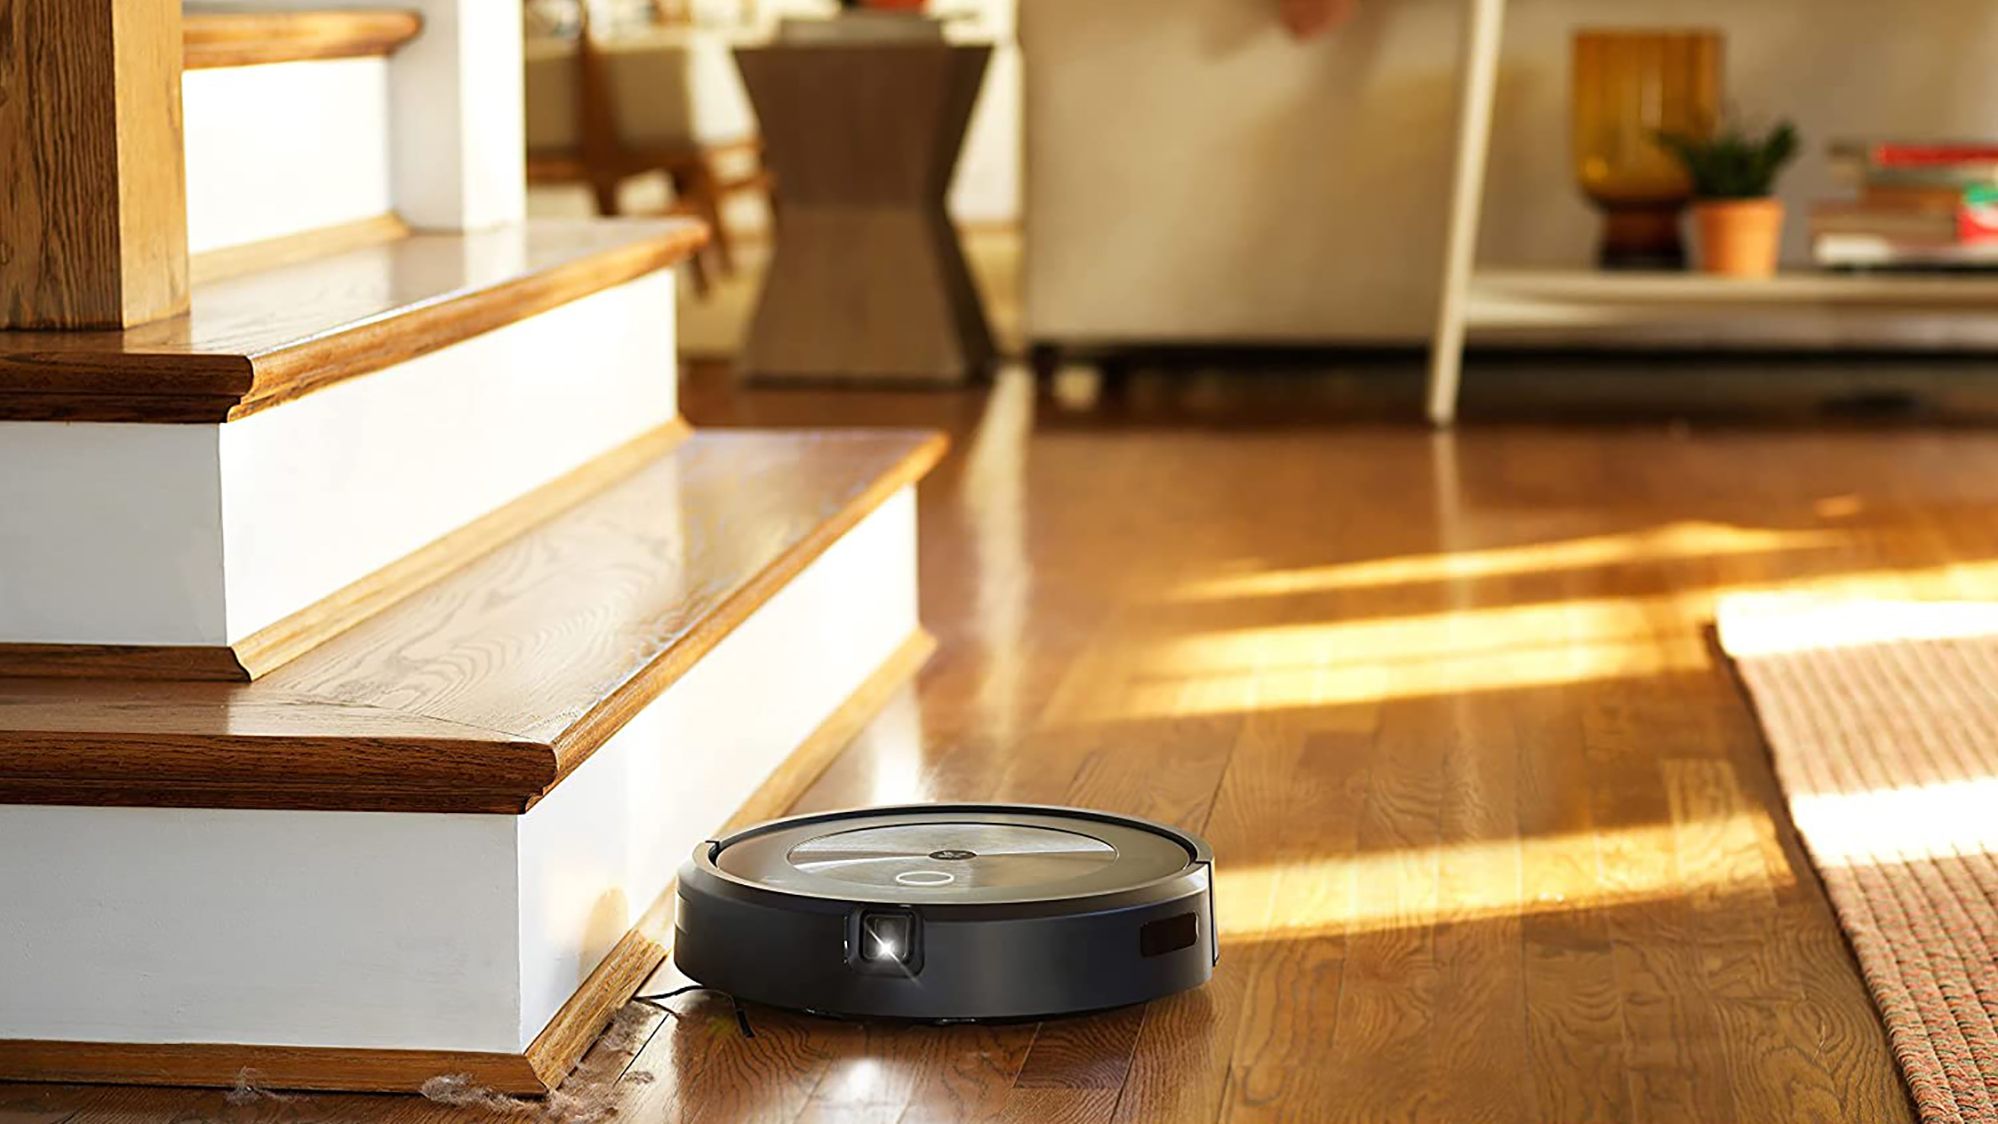 iRobot Roomba j7+ Self-Emptying Robot Vacuum Review 